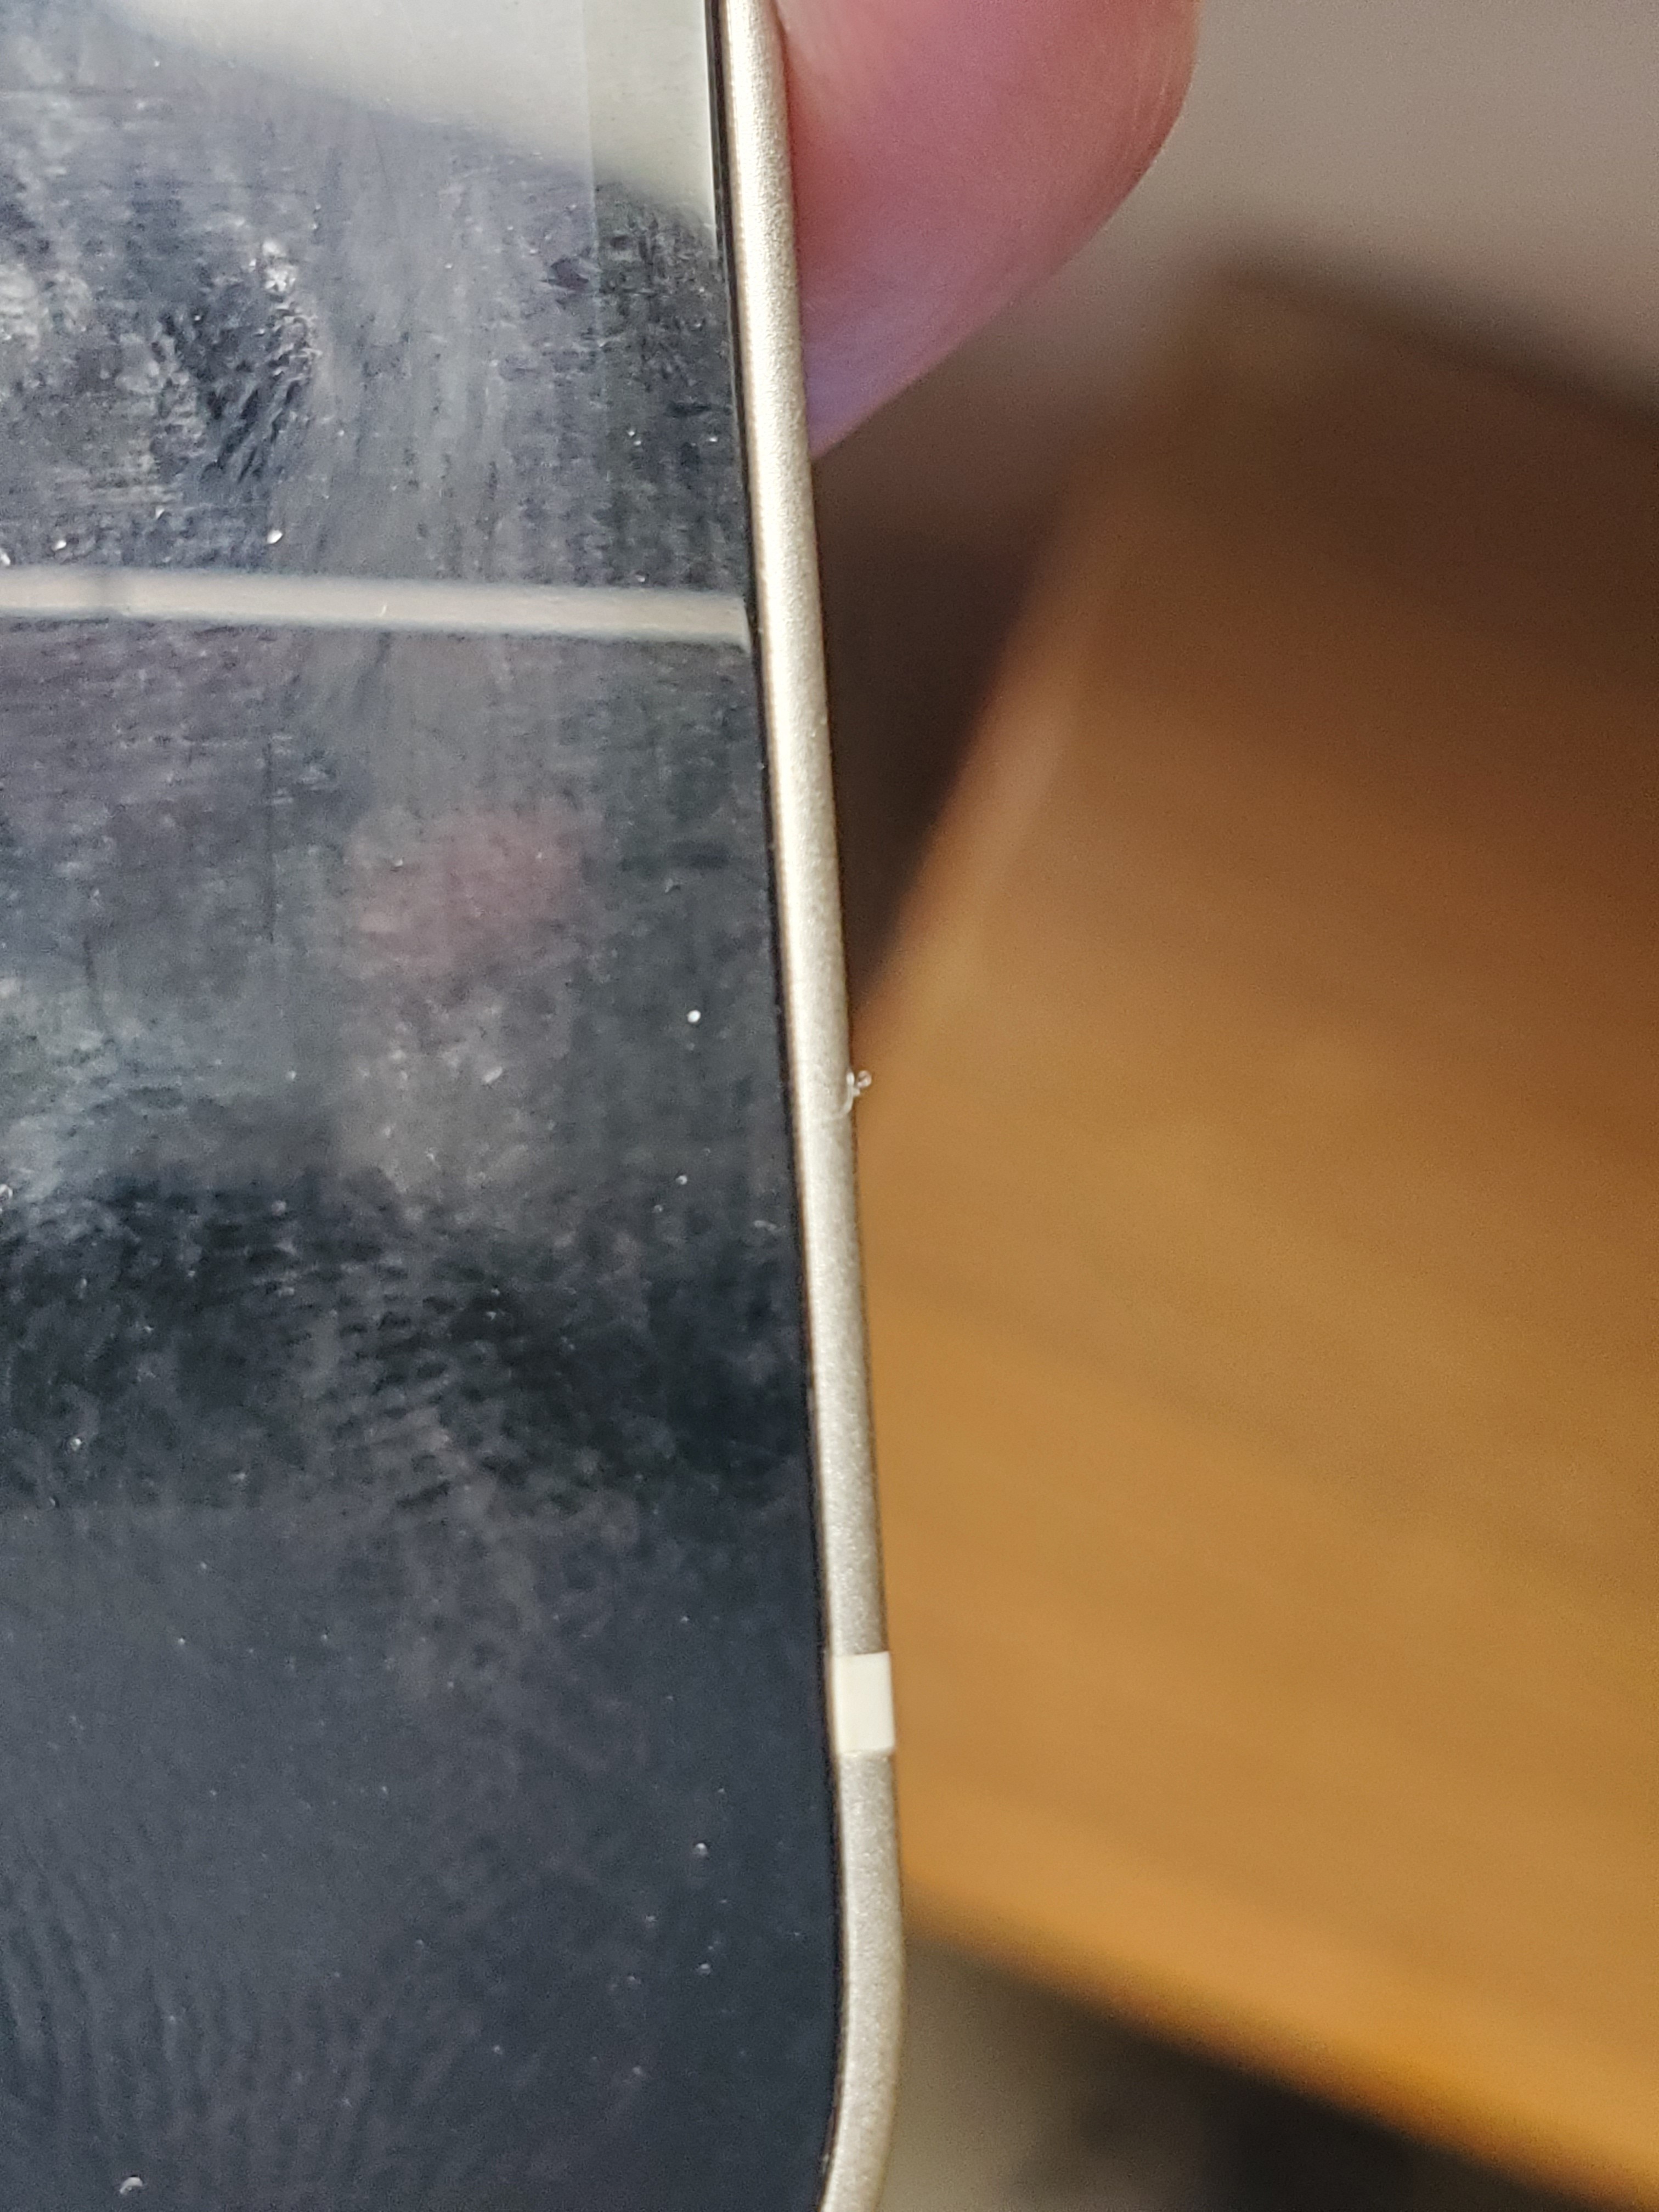 Iphone 12 边框缝隙大肉眼可见 Apple 社区